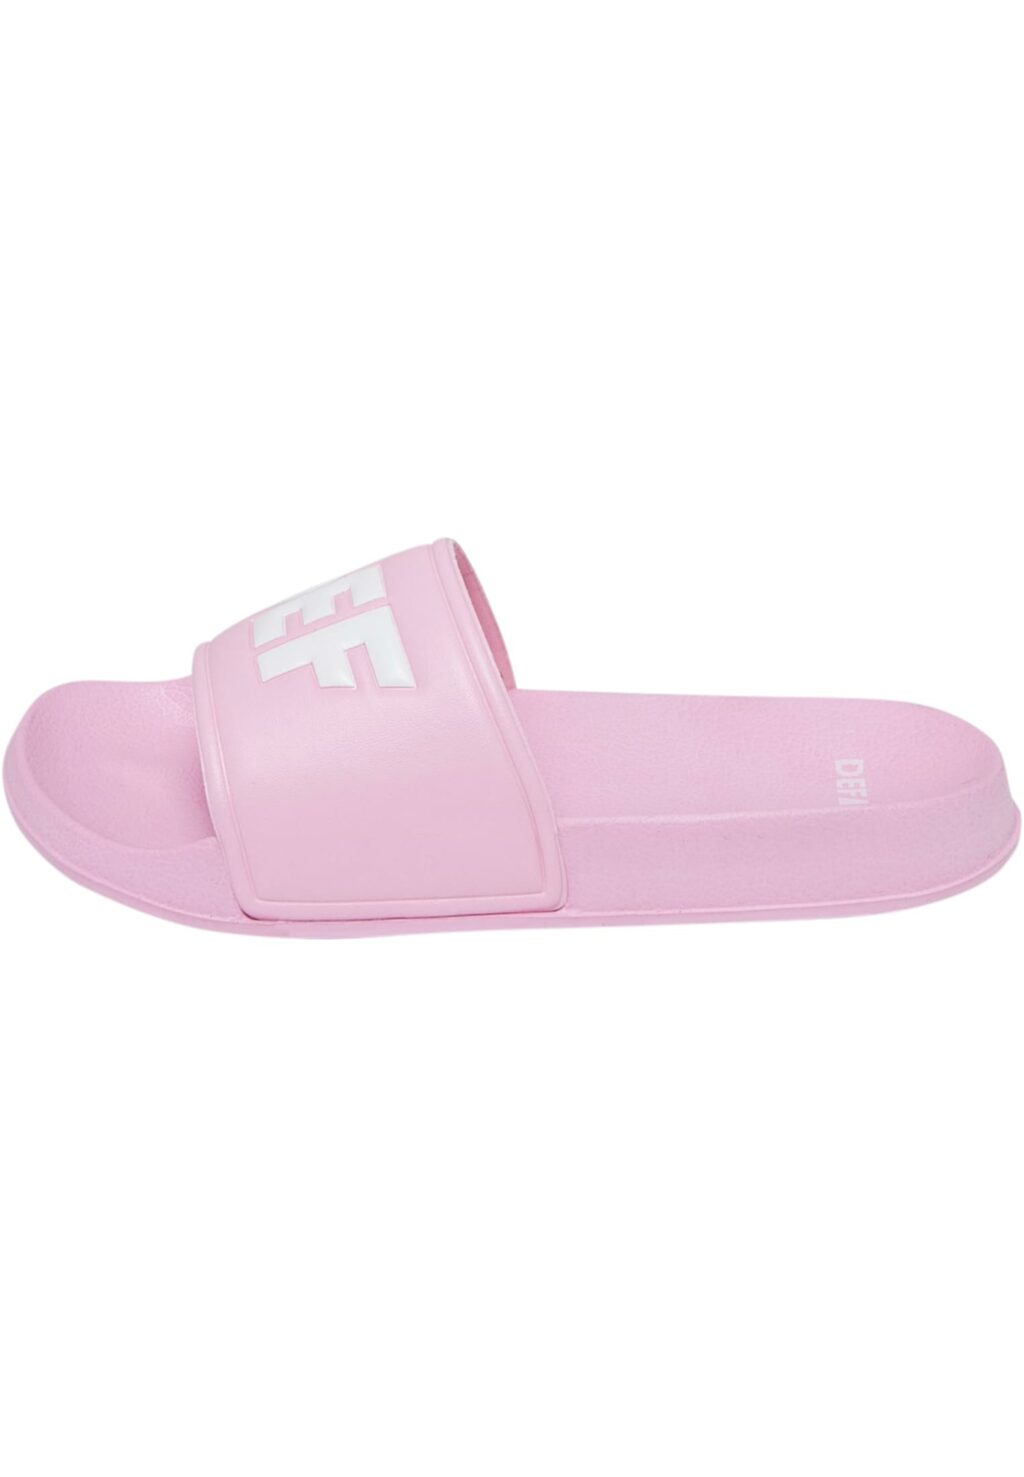 Defillten Sandals pink DFDF003